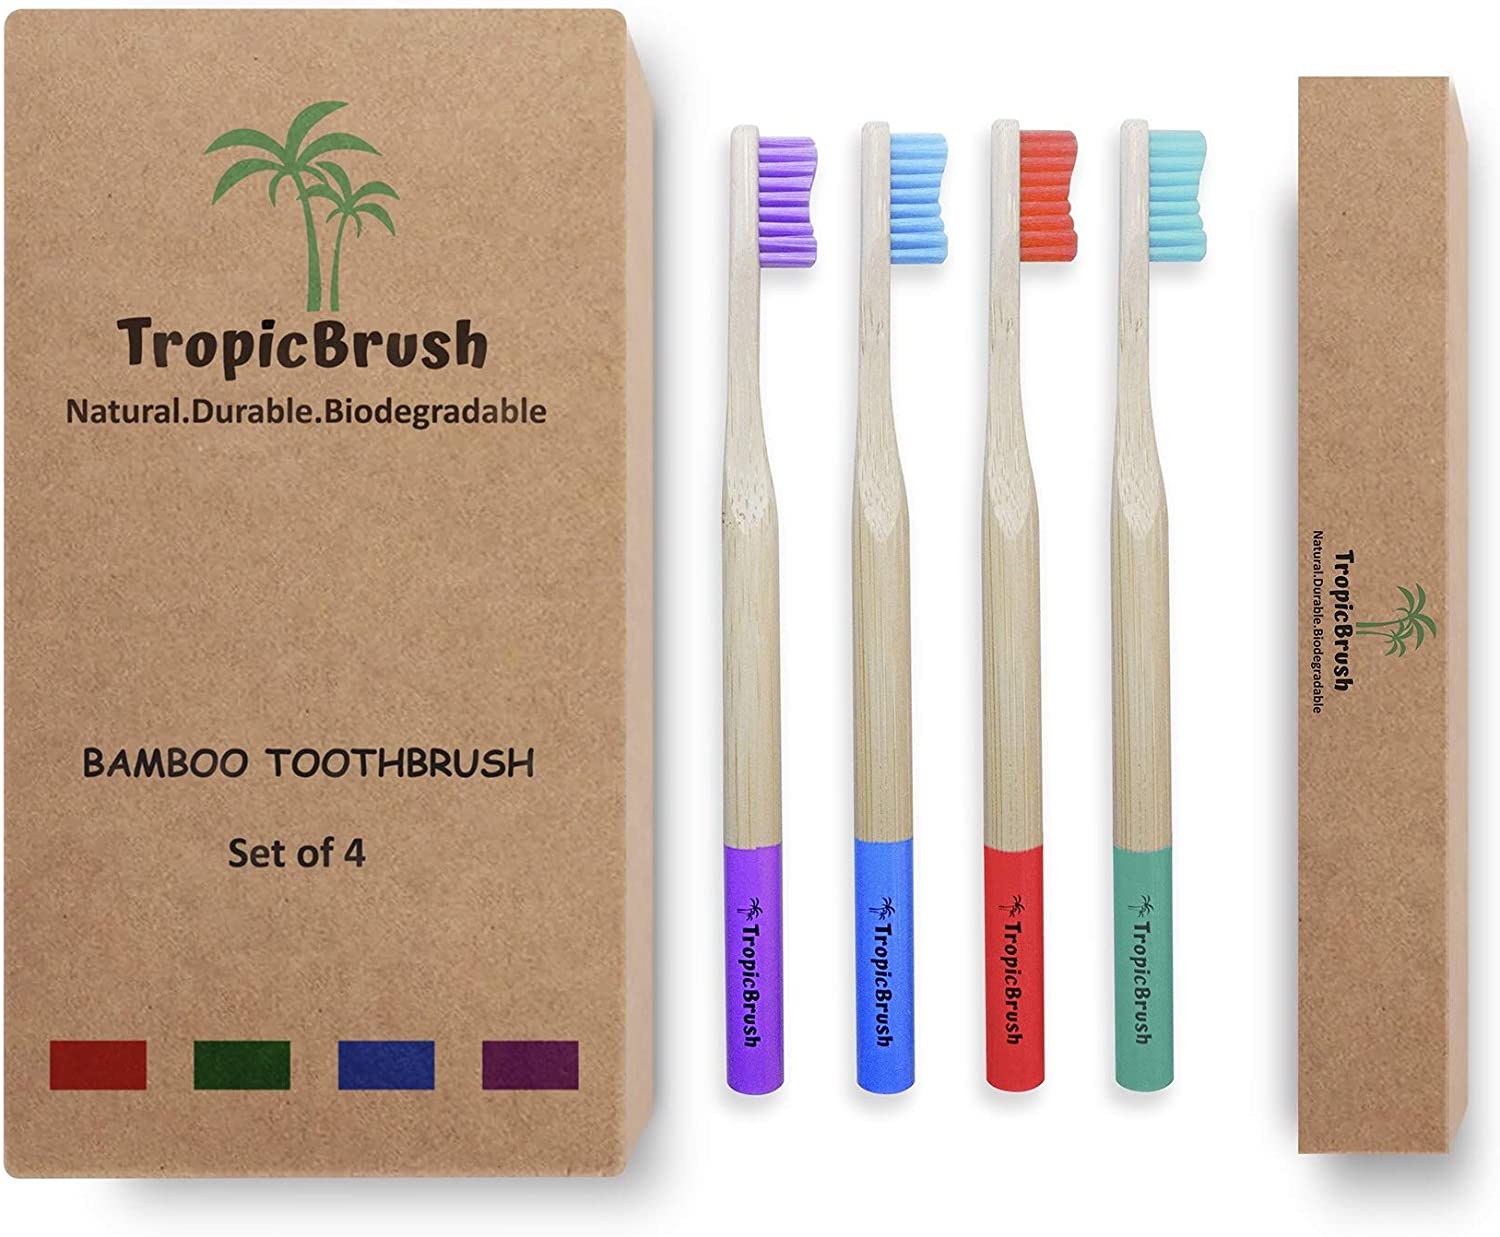 TropicBrush Bamboo Toothbrushes